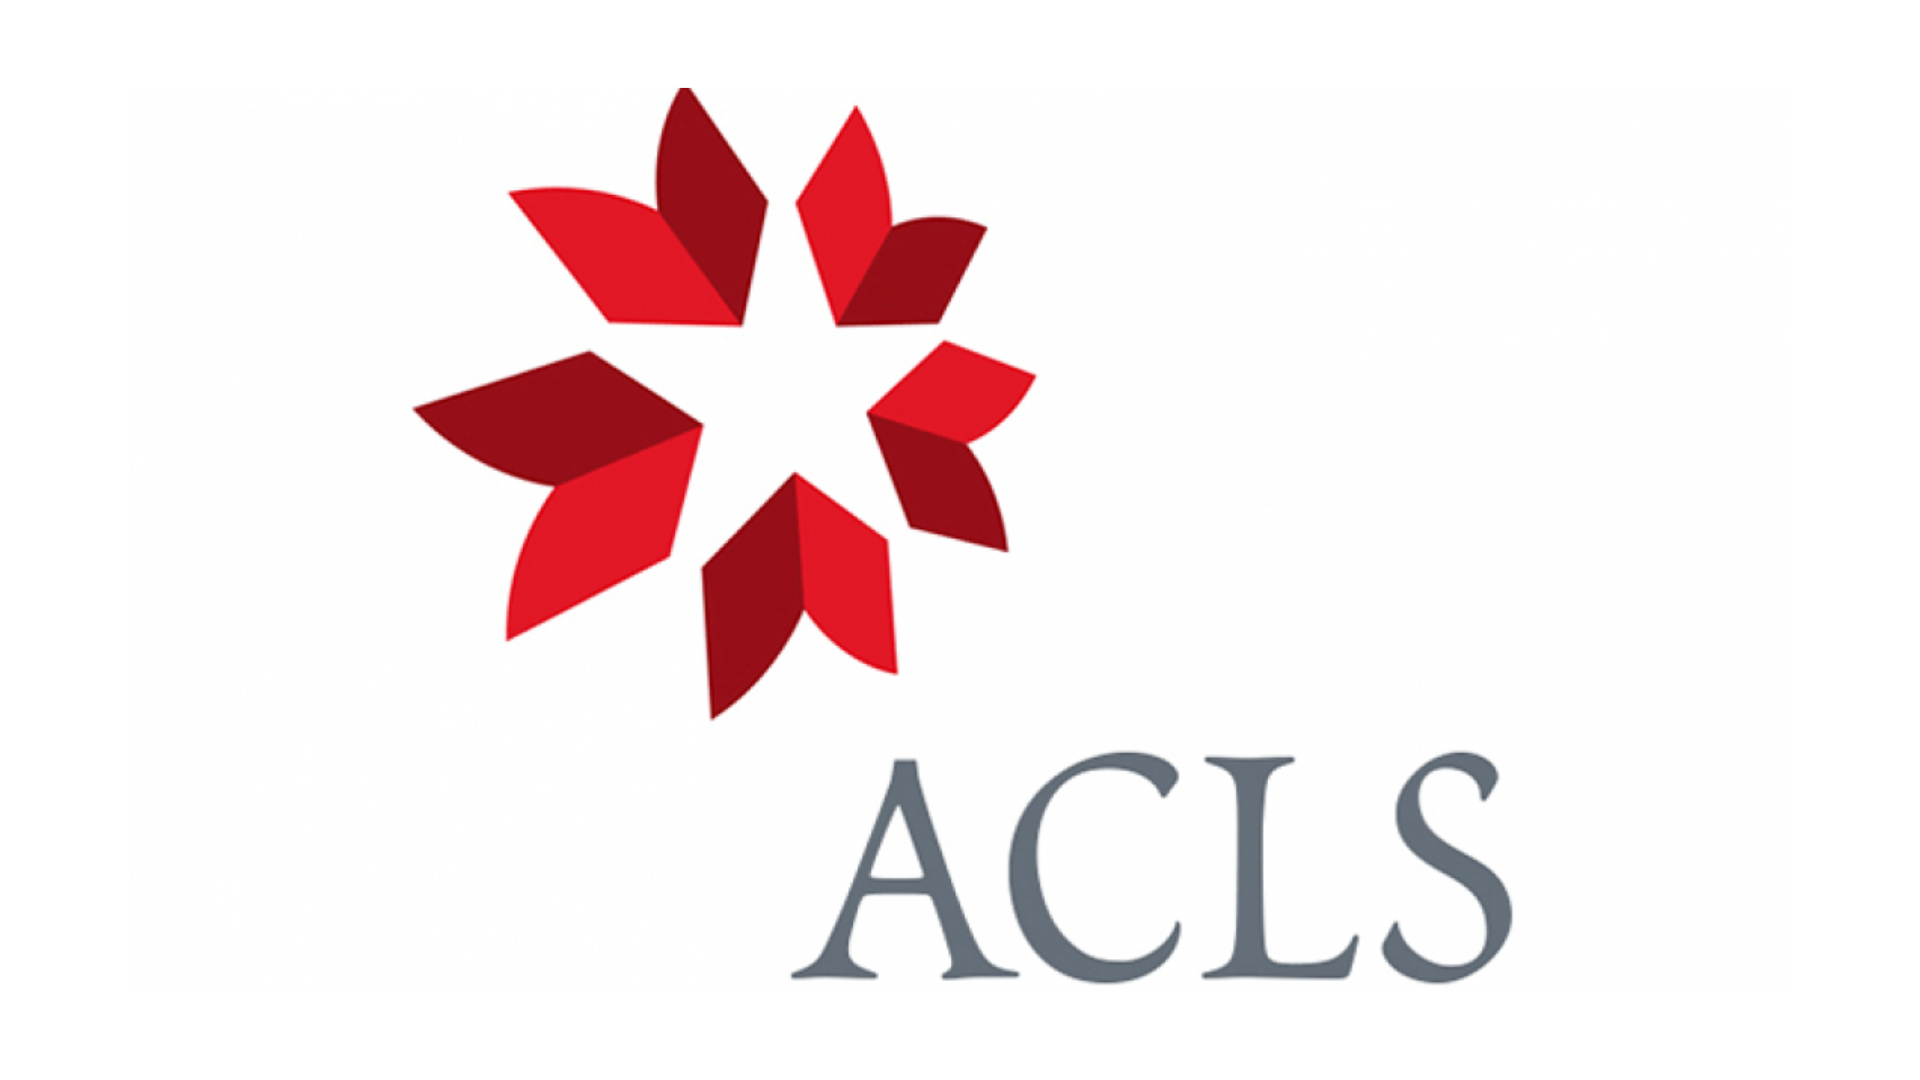 ACLS Logo